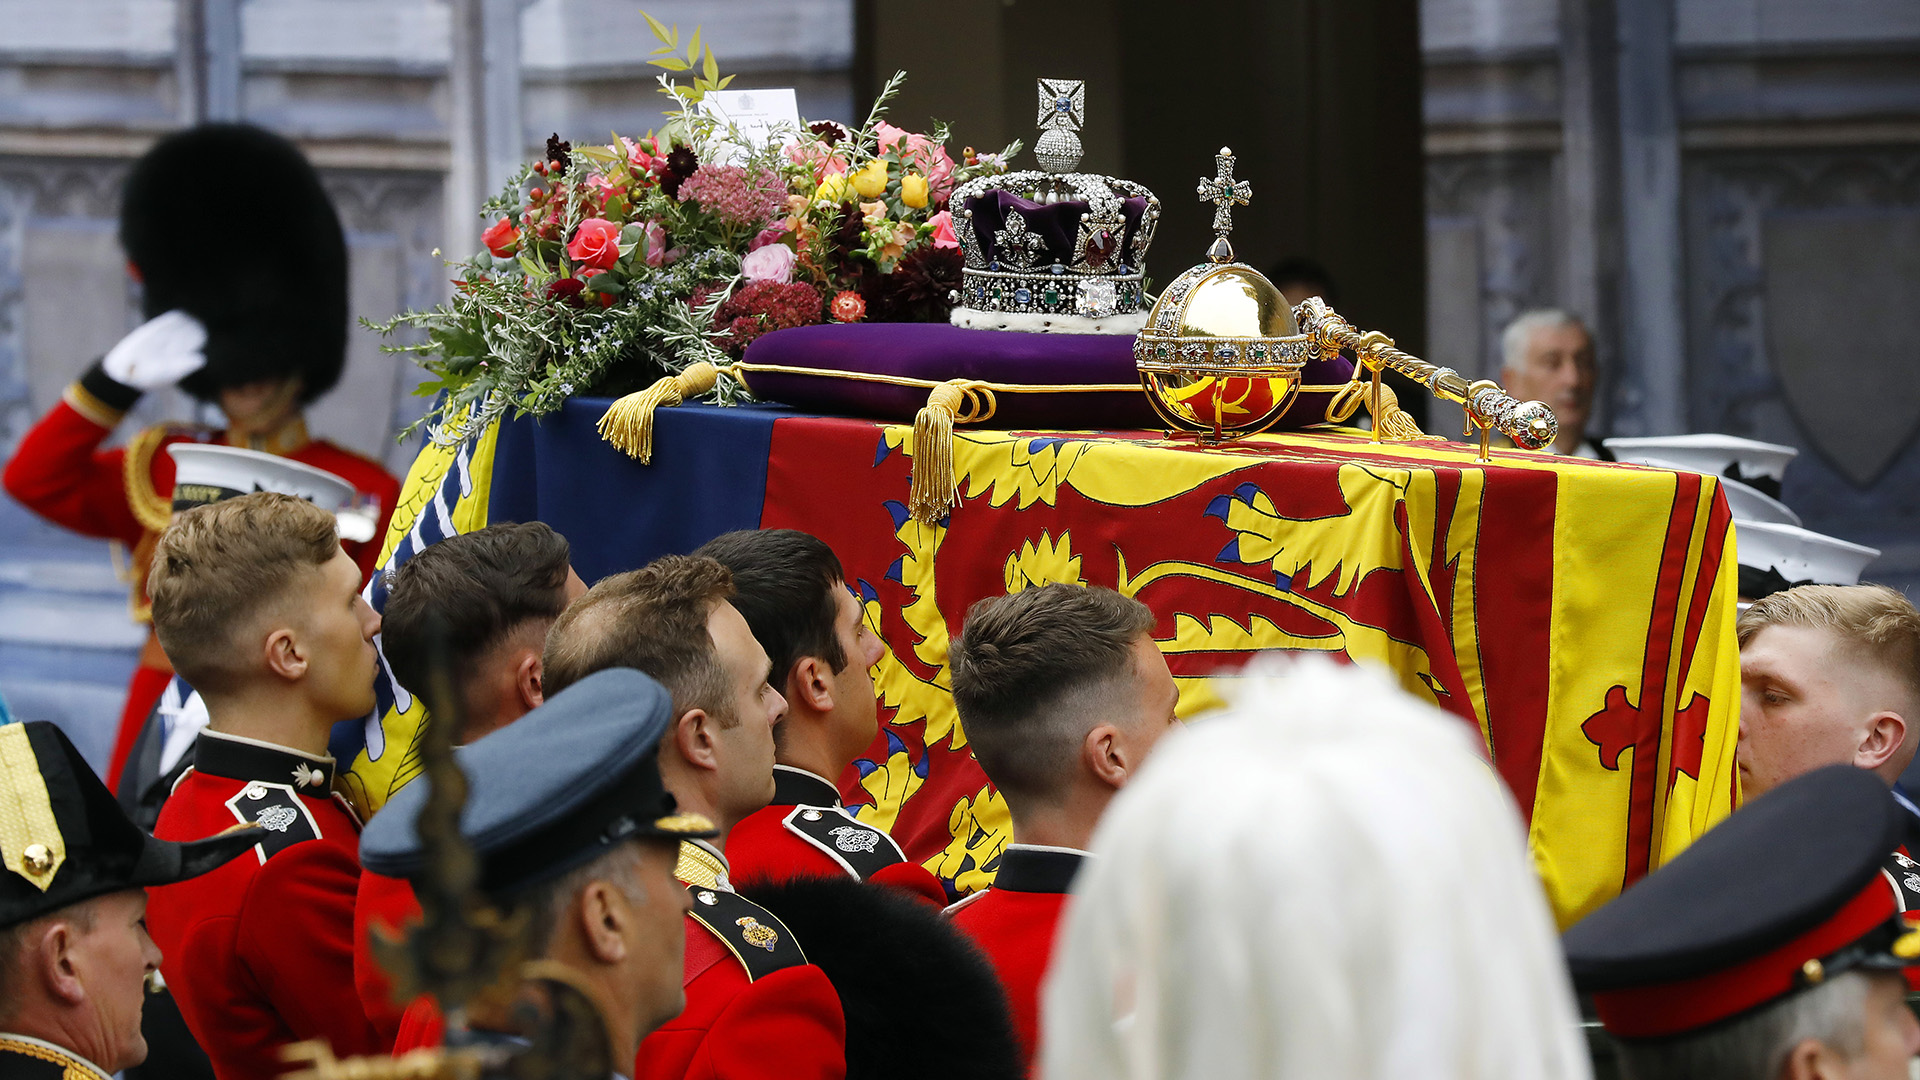 Le cercueil de la reine Elizabeth II avec la couronne d'État impériale reposant dessus est transporté à l'abbaye de Westminster lors des funérailles d'État de la reine Elizabeth II, à Londres, le lundi 19 septembre 2022.